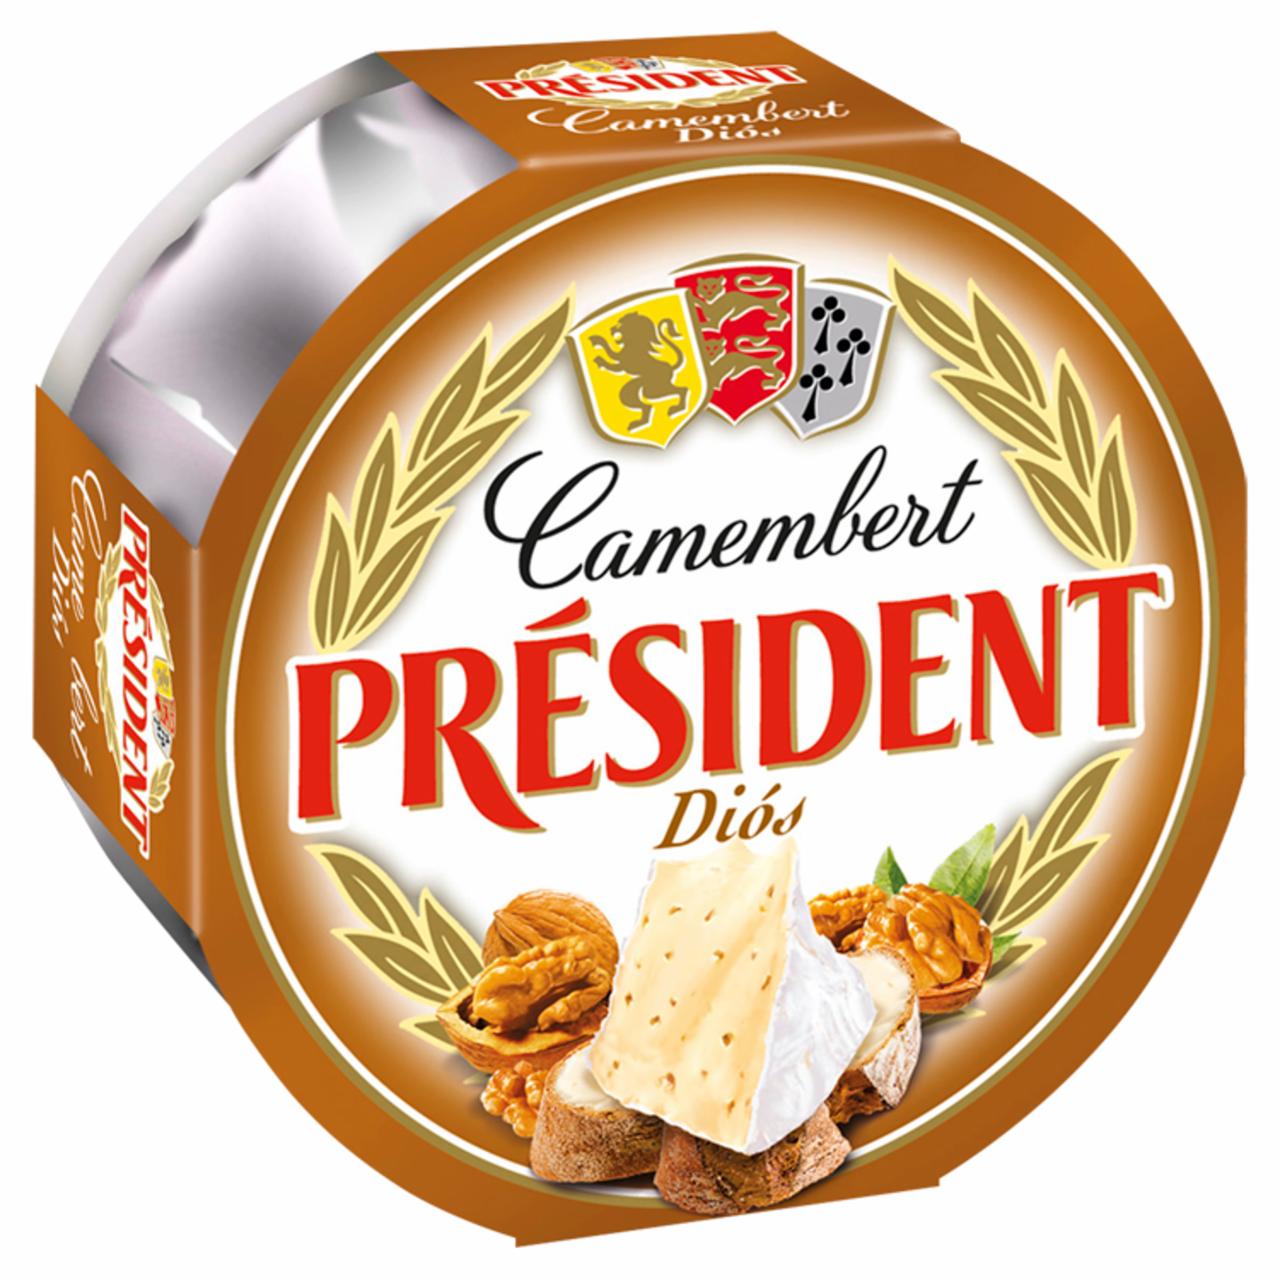 Képek - Président diós camembert sajt 120 g